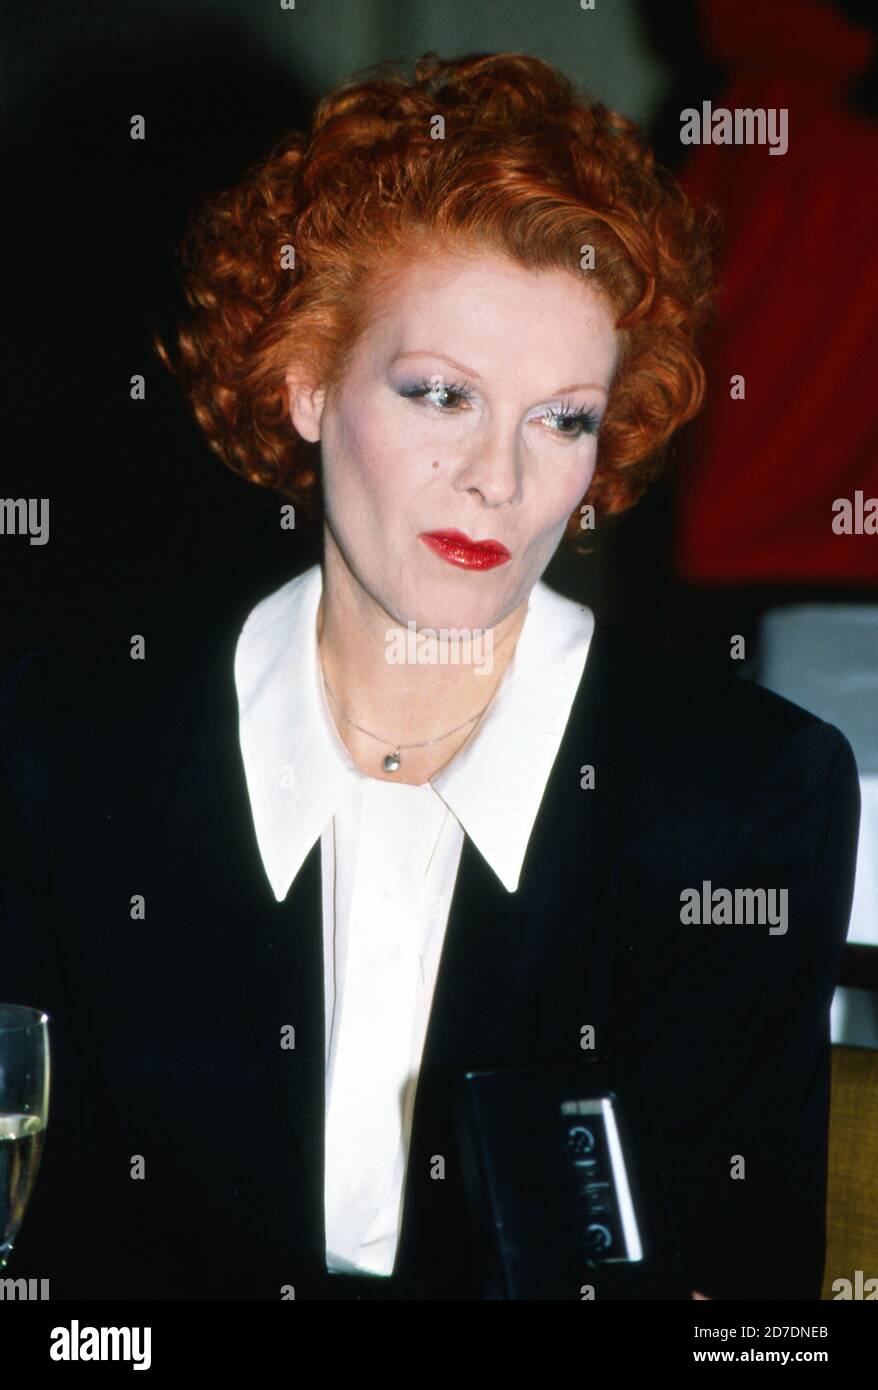 Elisabeth Volkmann, deutsche Schauspielerin und Synchronsprecherin, stellt ad Amburgo ihre neue Hautpflege-Serie 'Hautfrühling' vor, Deutschland 1988. Foto Stock